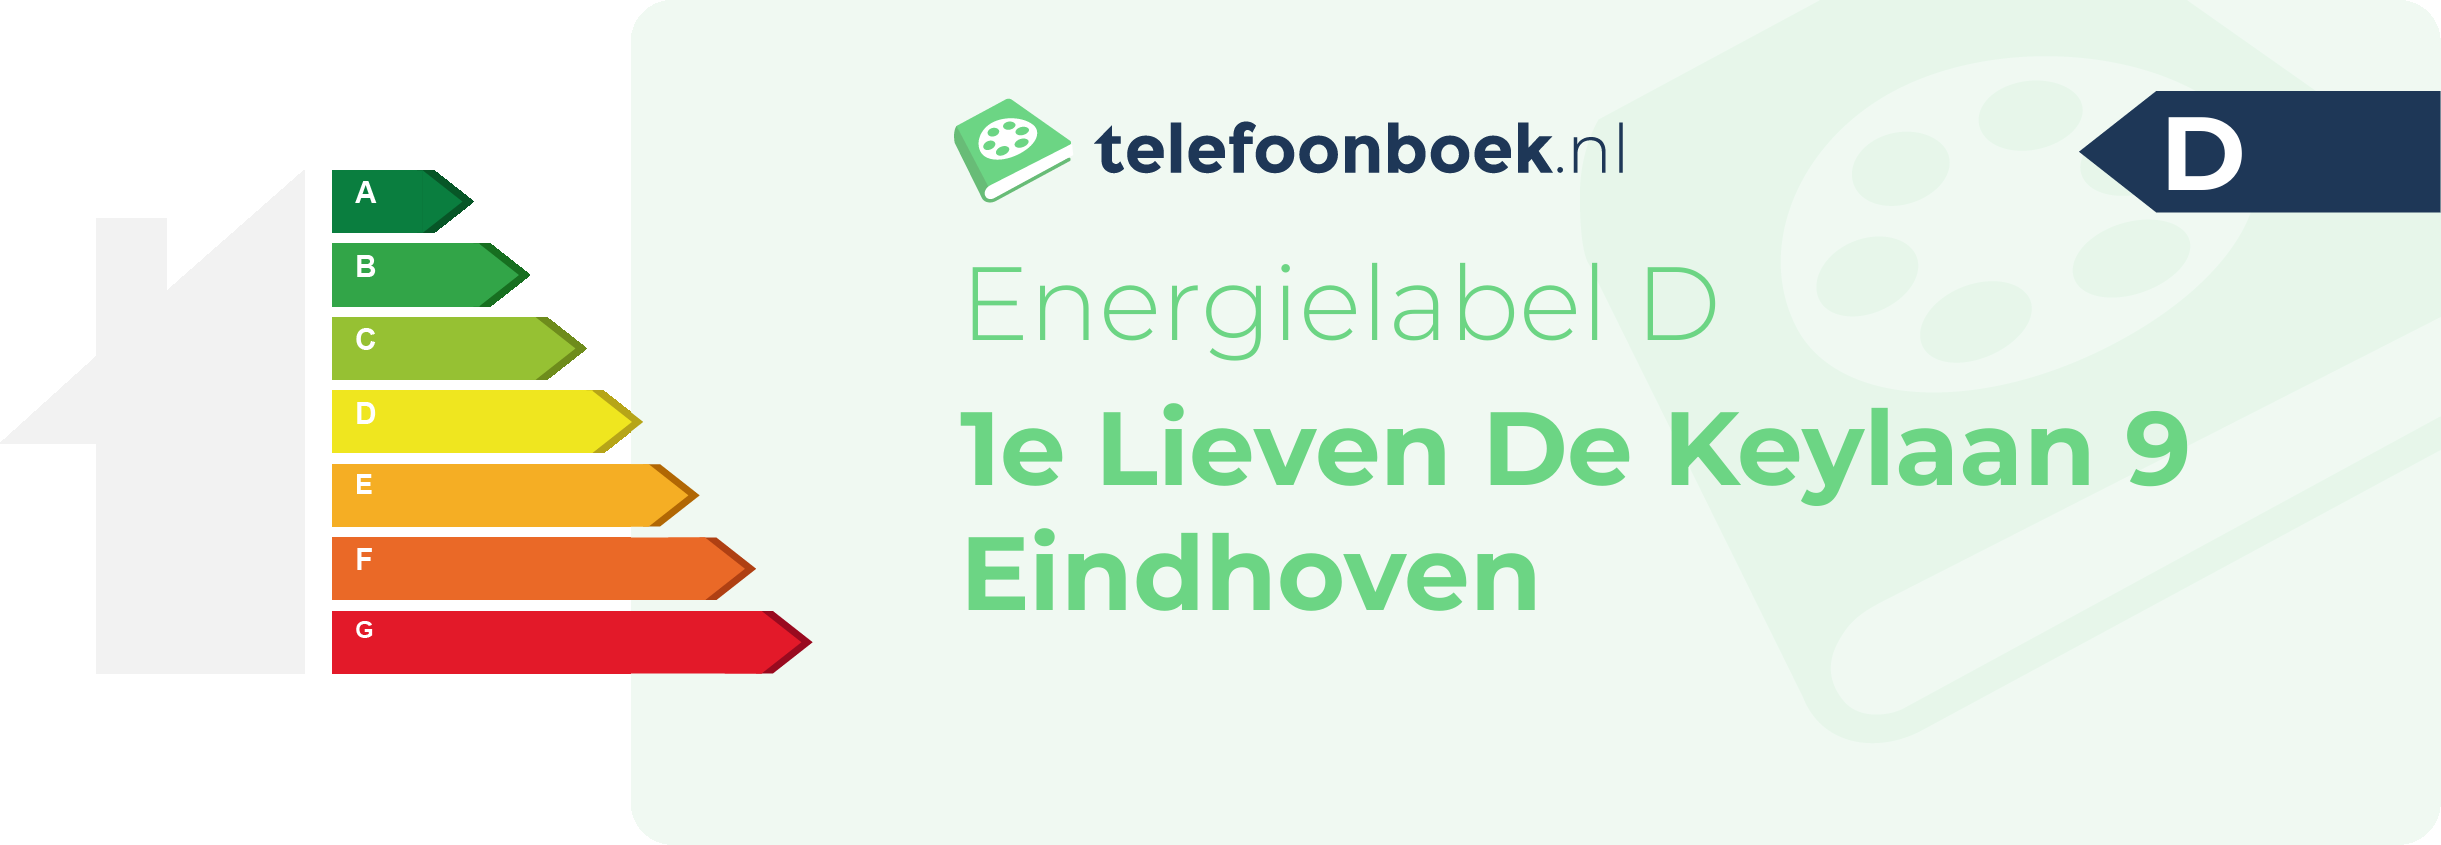 Energielabel 1e Lieven De Keylaan 9 Eindhoven